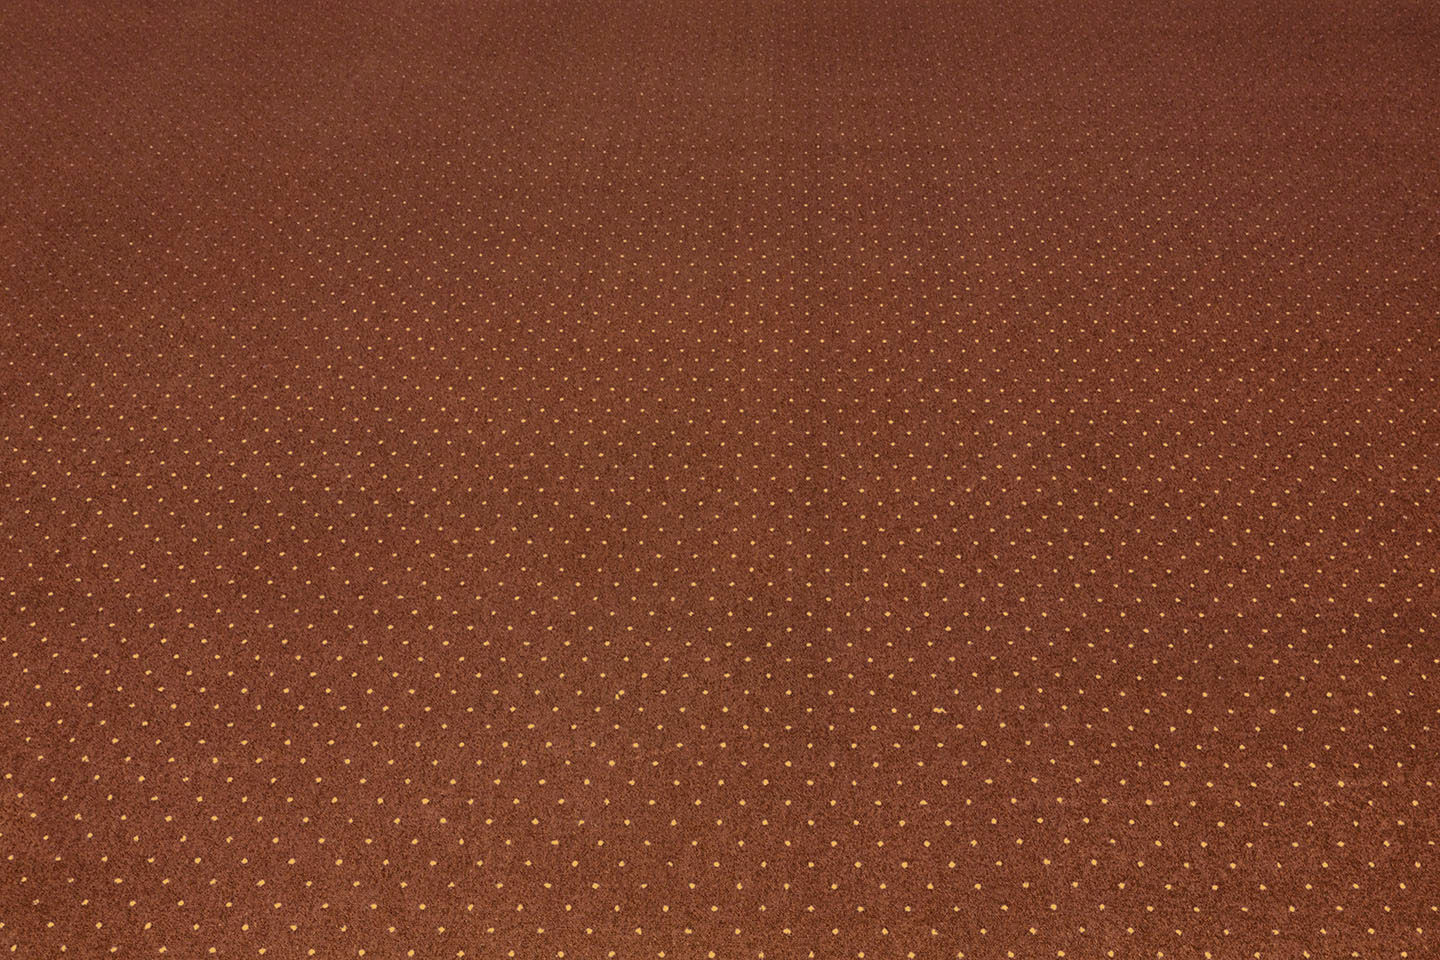 Metrážny koberec AKZENTO hnedý